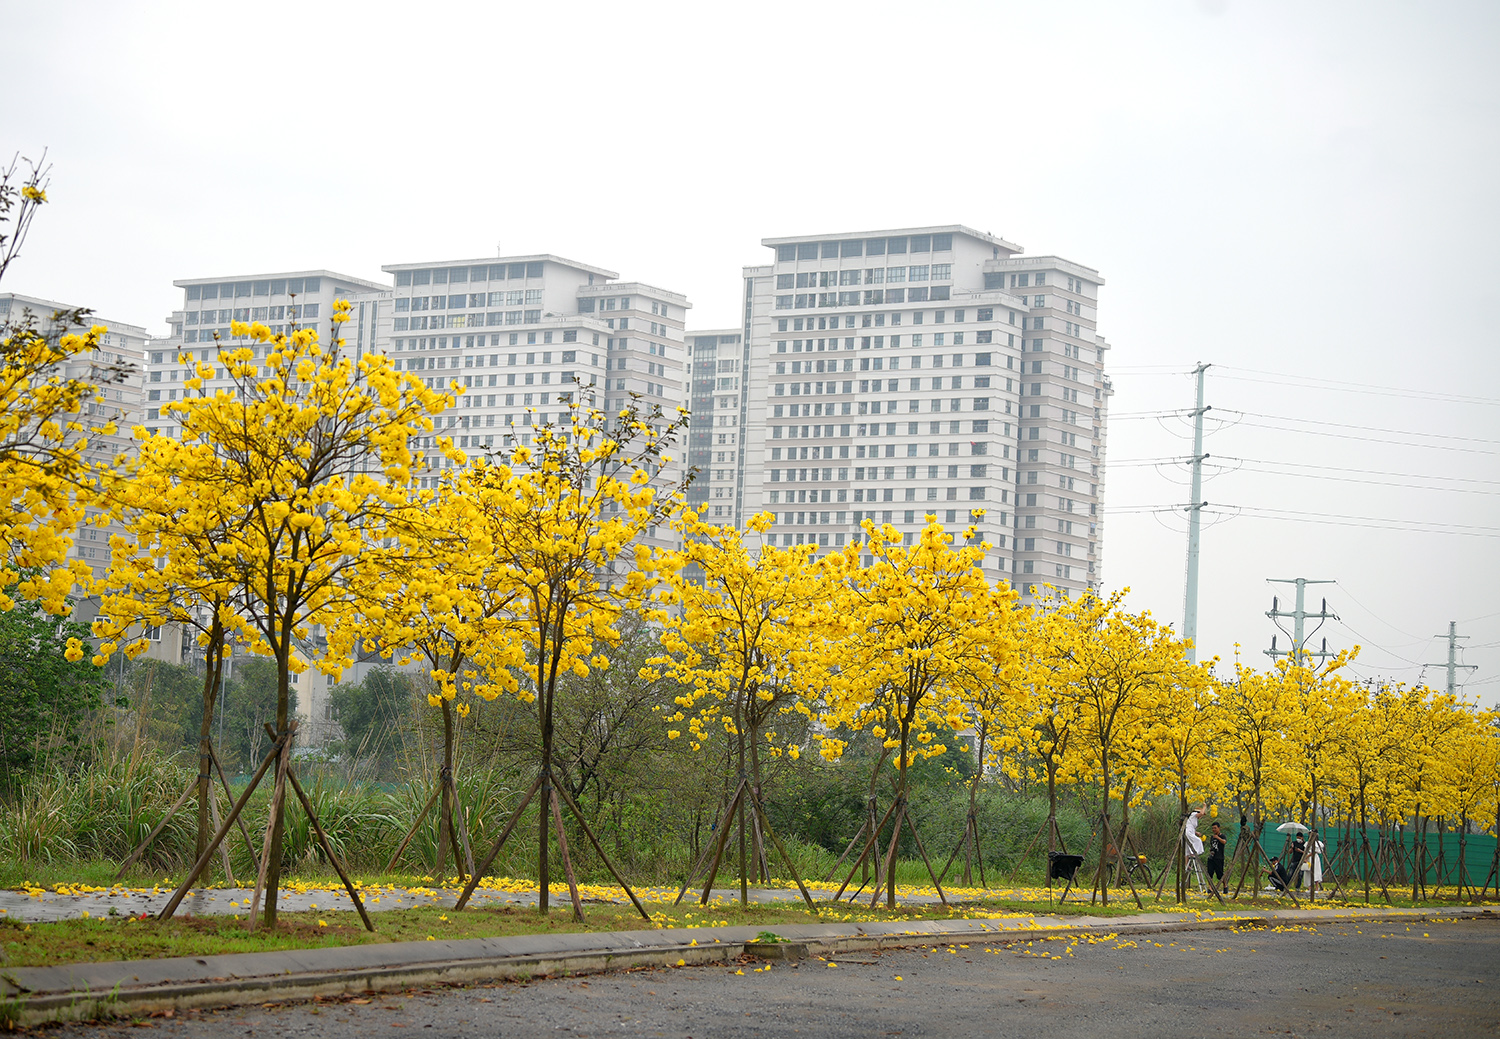 Đến khu đô thị ParkCity Hà Nội trong thời gian này, chúng ta sẽ dễ bắt gặp khung cảnh "nhuộm" vàng cả một vùng trời bởi những hàng cây phong linh đang vào mùa bung nở rực rỡ nhất.